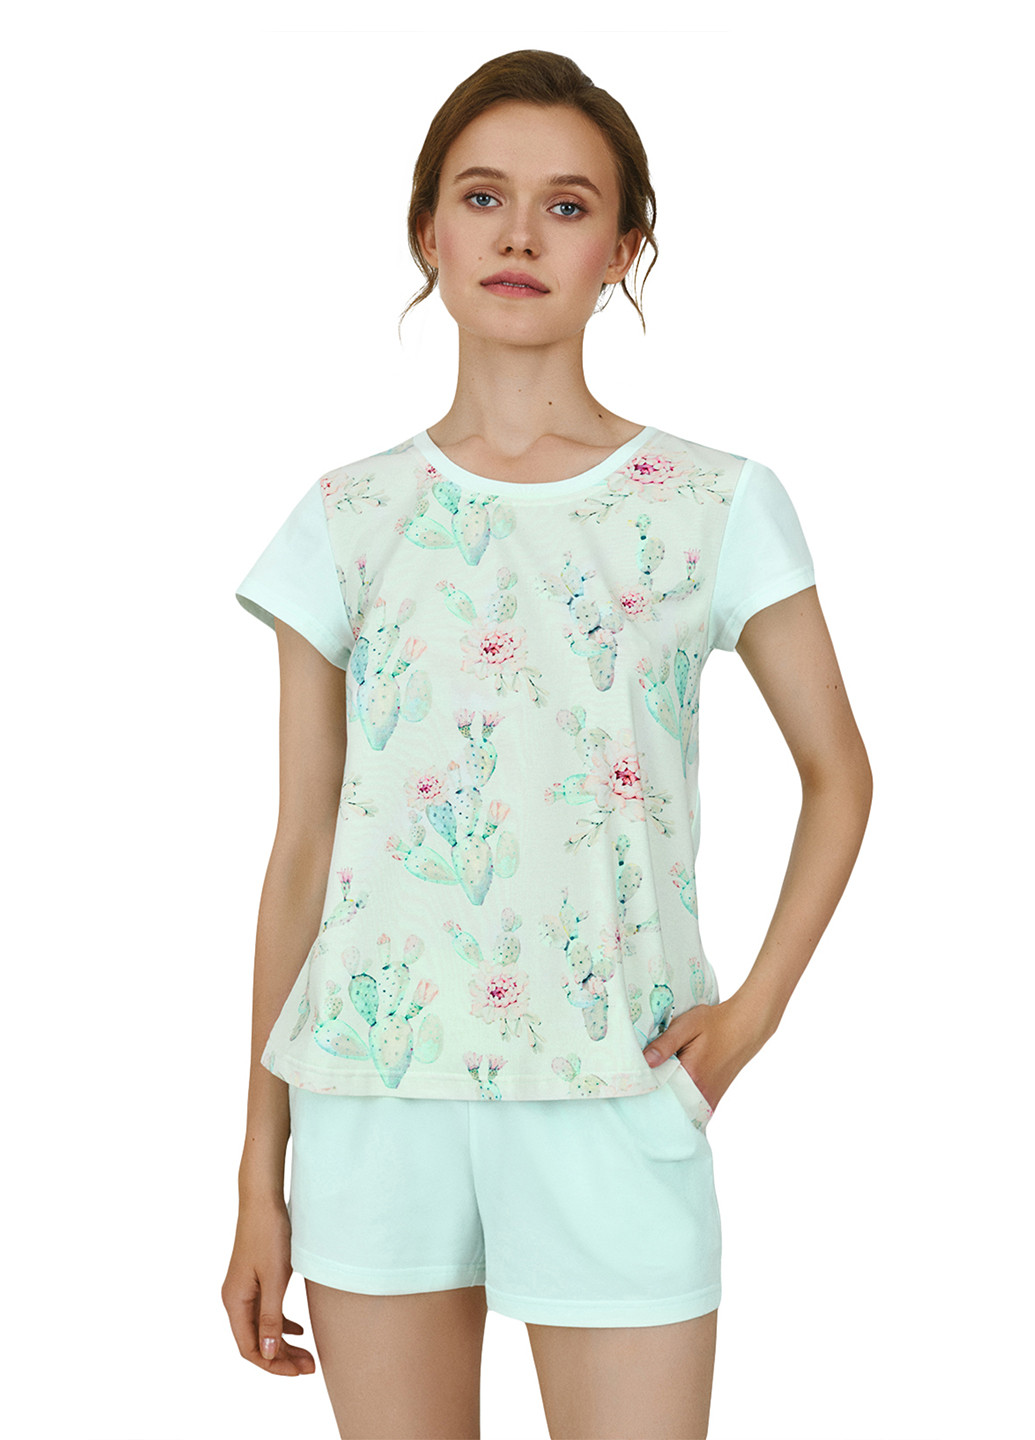 Мятная всесезон пижама (футболка, шорты) футболка + шорты Ellen